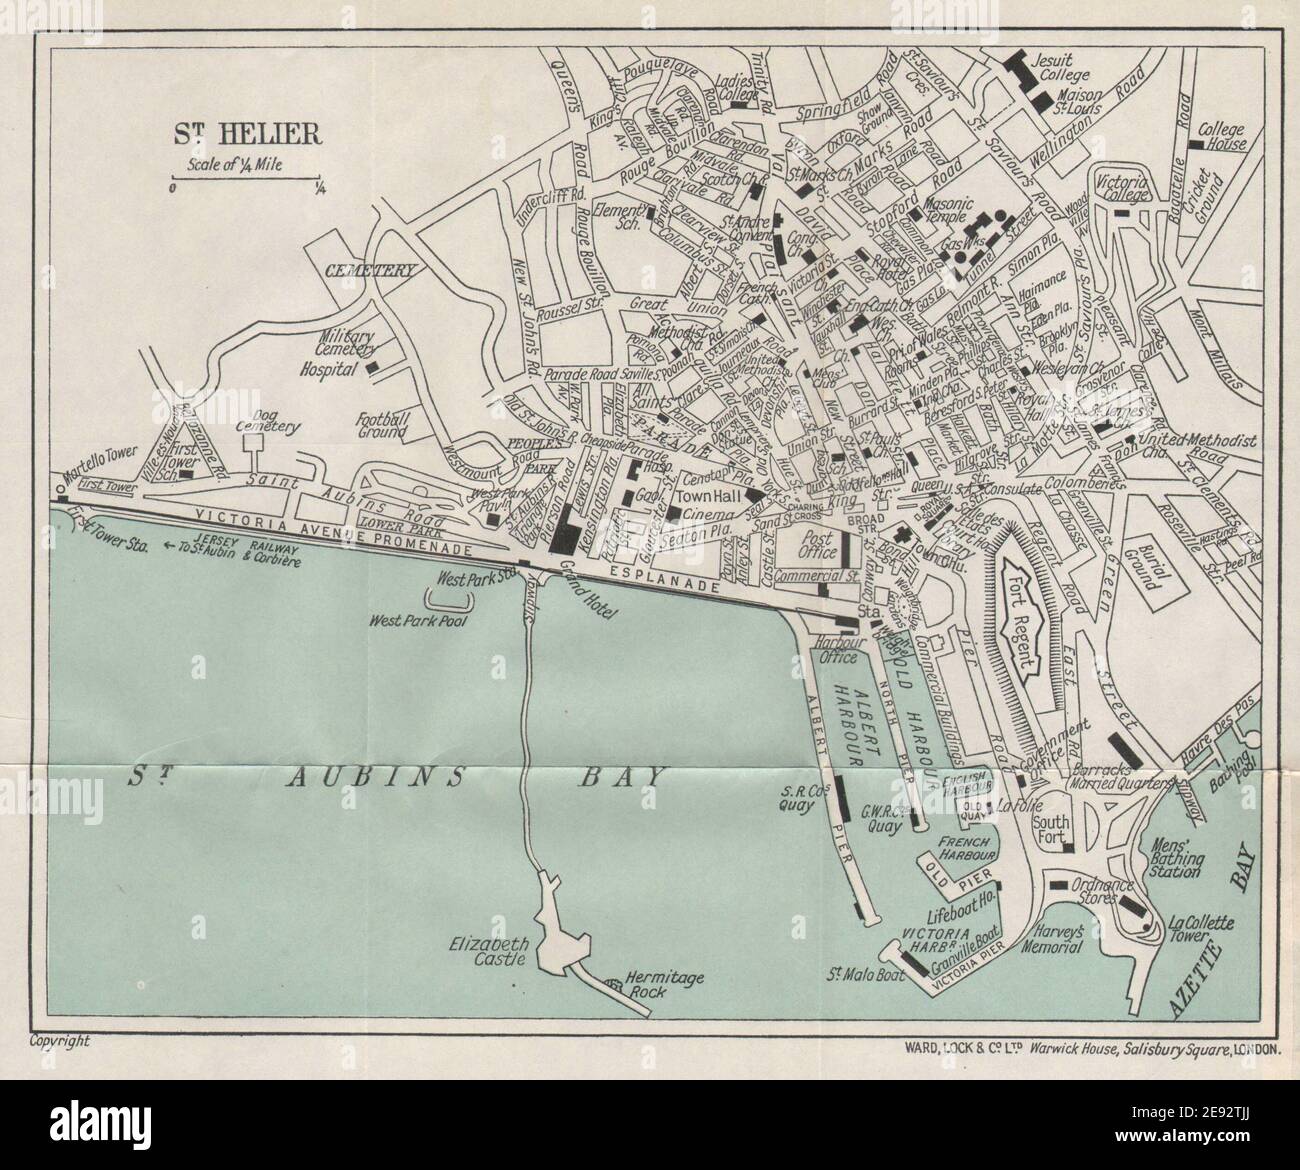 ST. HELIER vintage town city plan. Jersey Channel Islands. WARD LOCK 1934 map Stock Photo